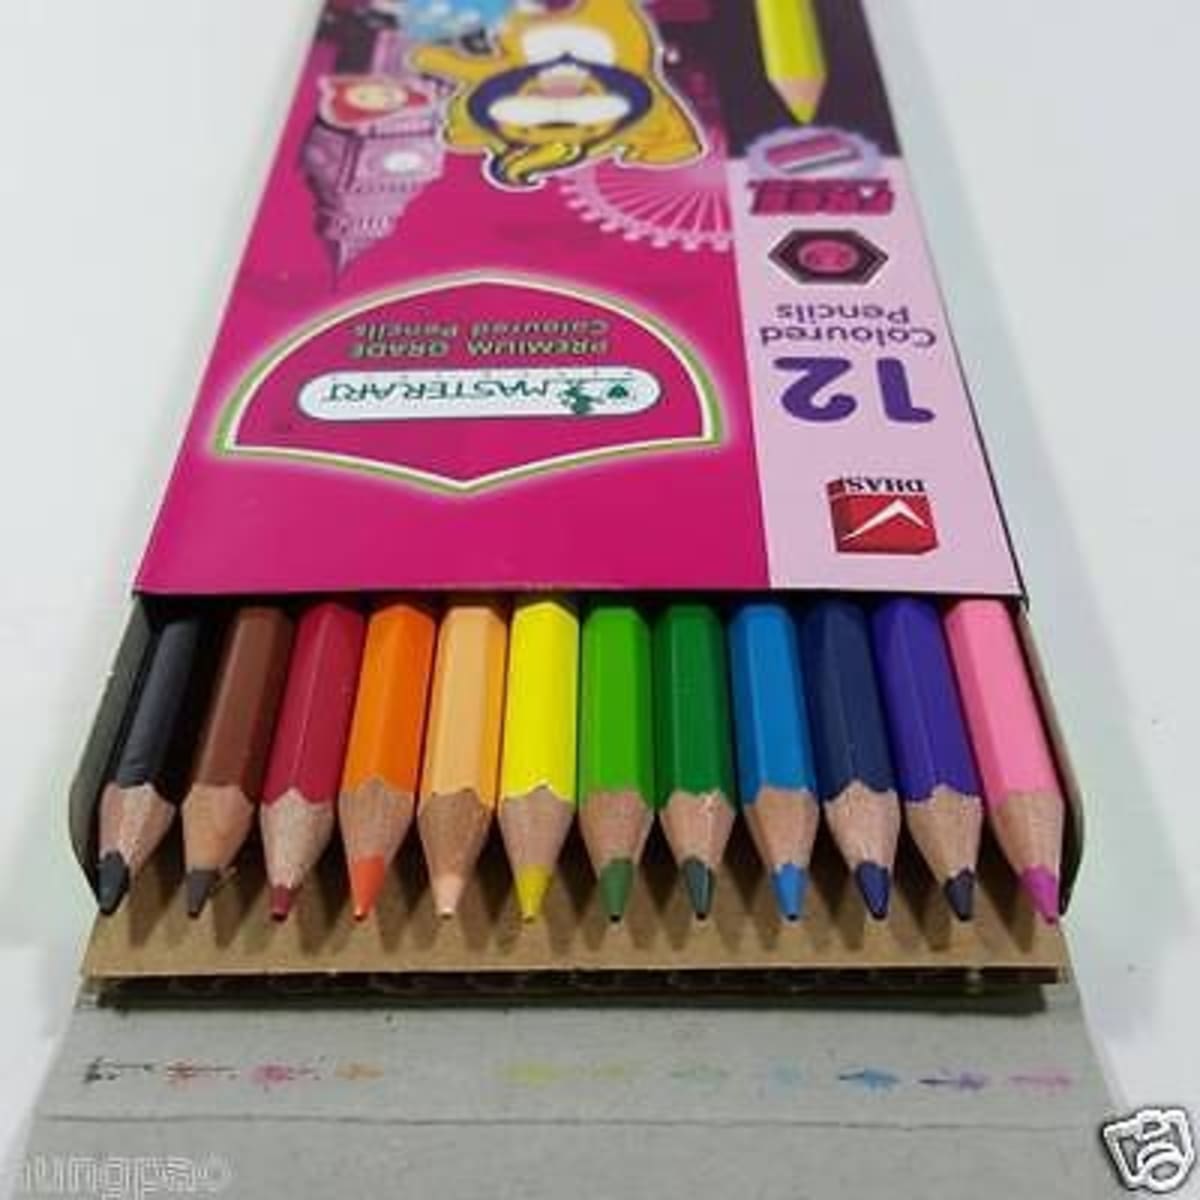 Colour Pencils - Set Of 12